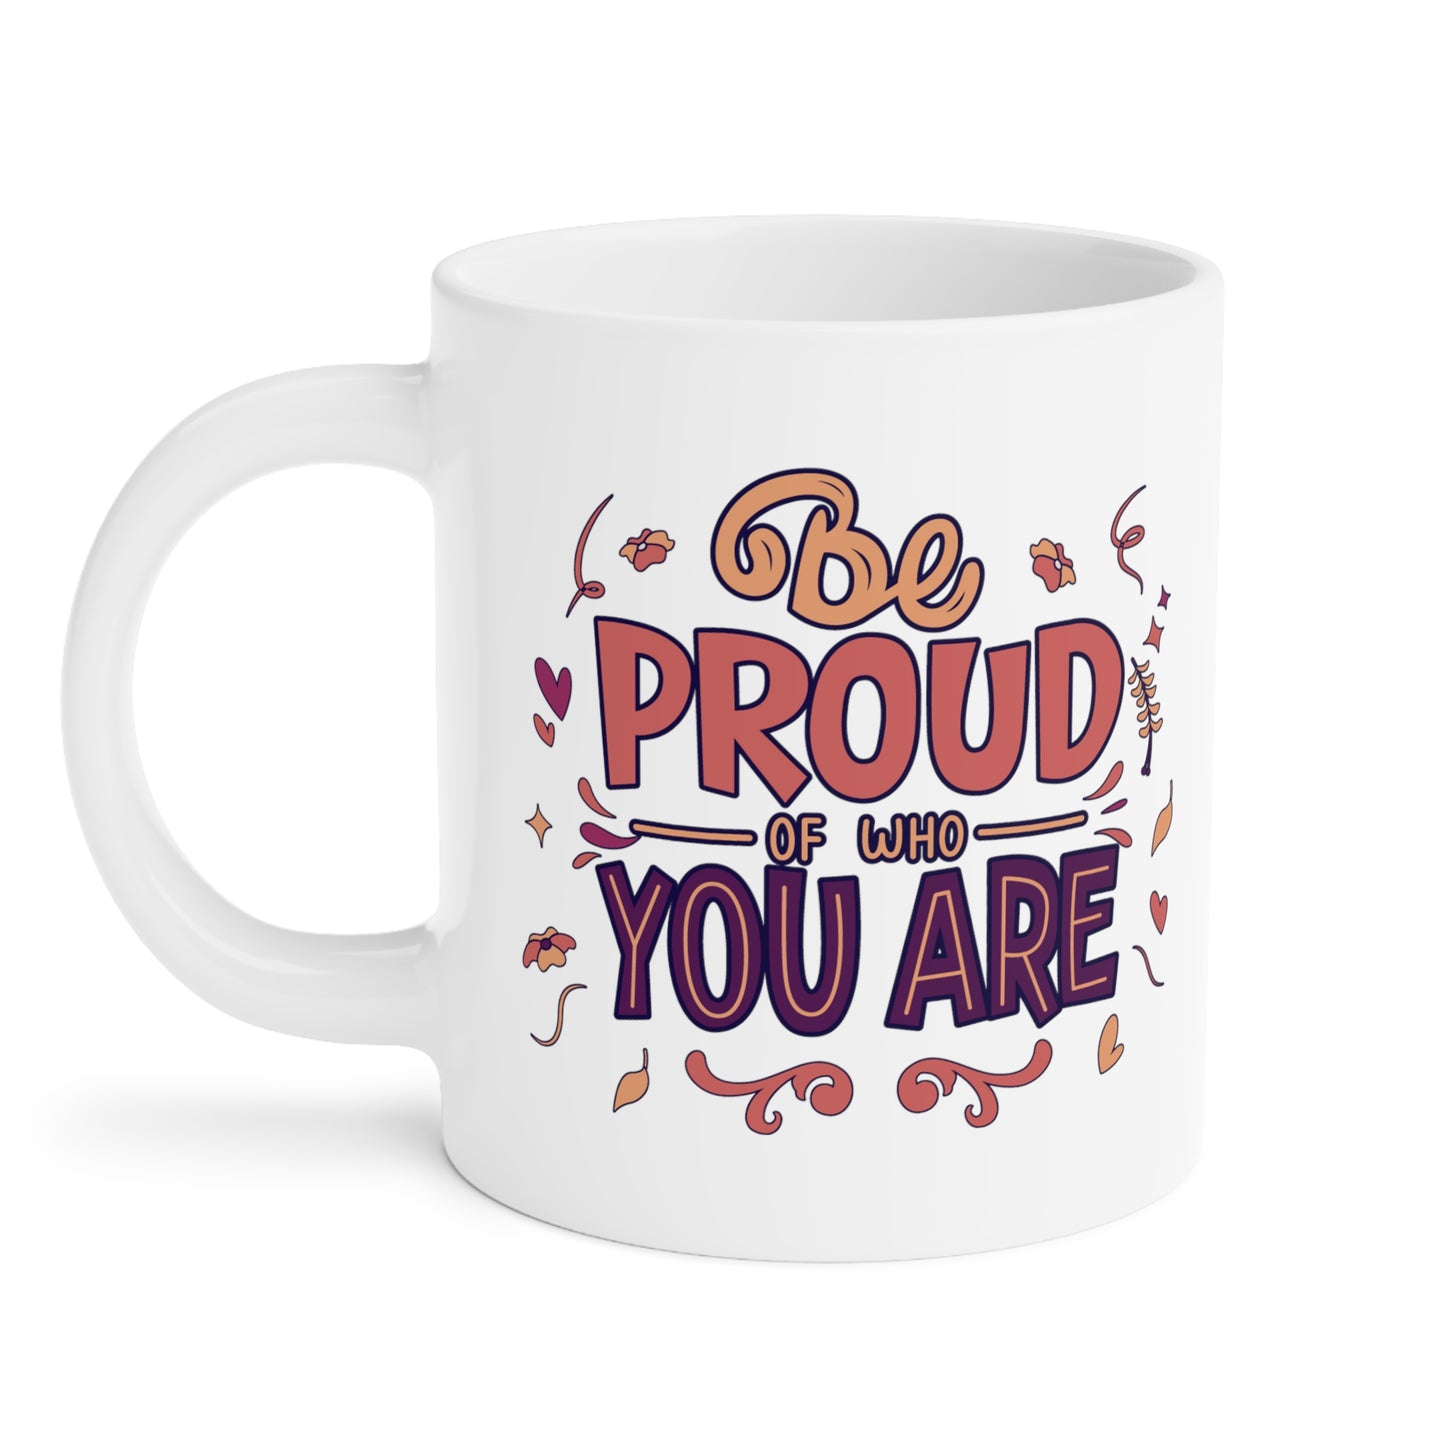 feminist mug, self-love mug